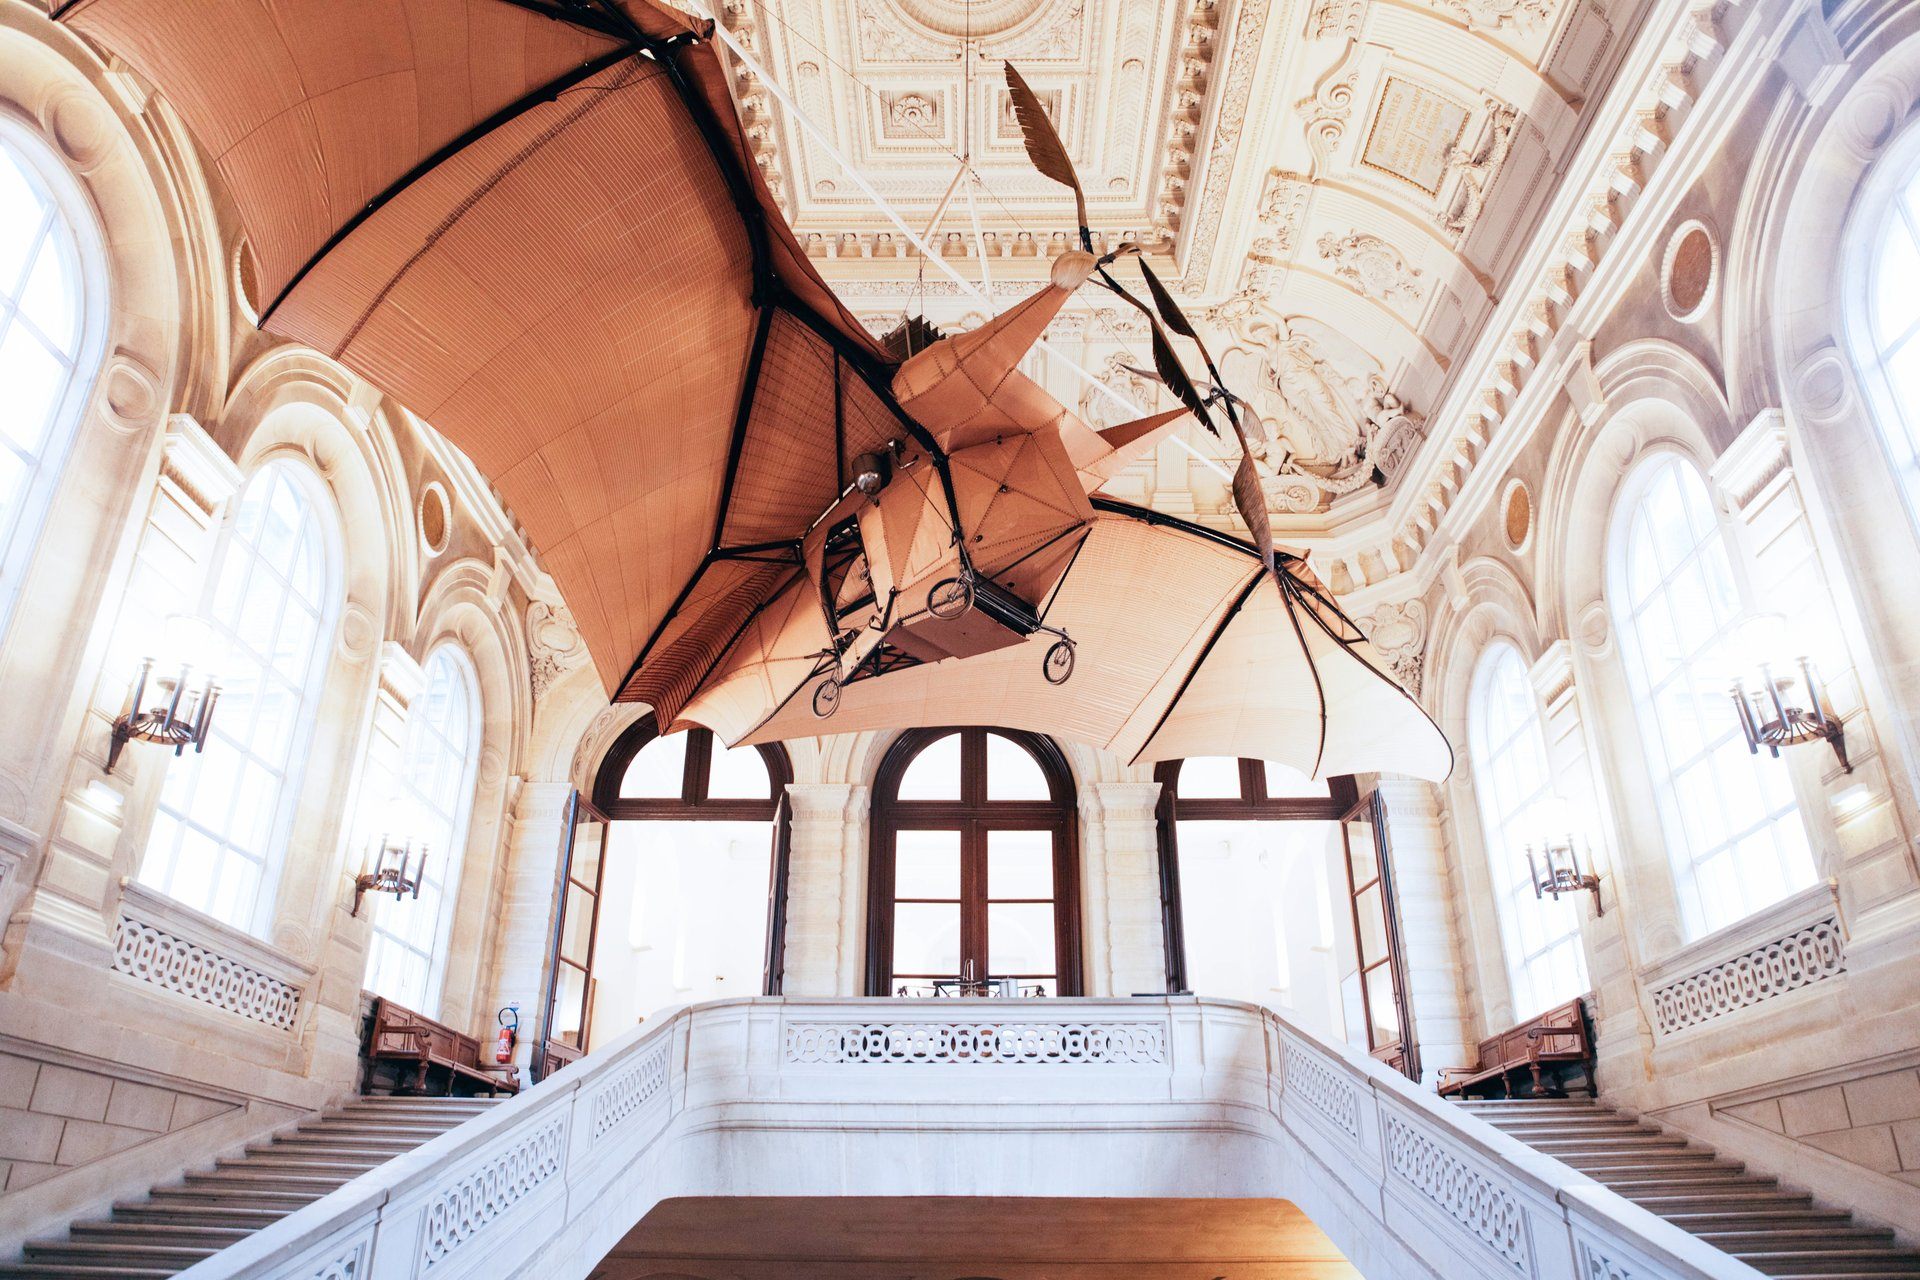 Blick in einen Museums-Raum mit einem hölzernen Fluggerät mit Flügeln an der Decke.